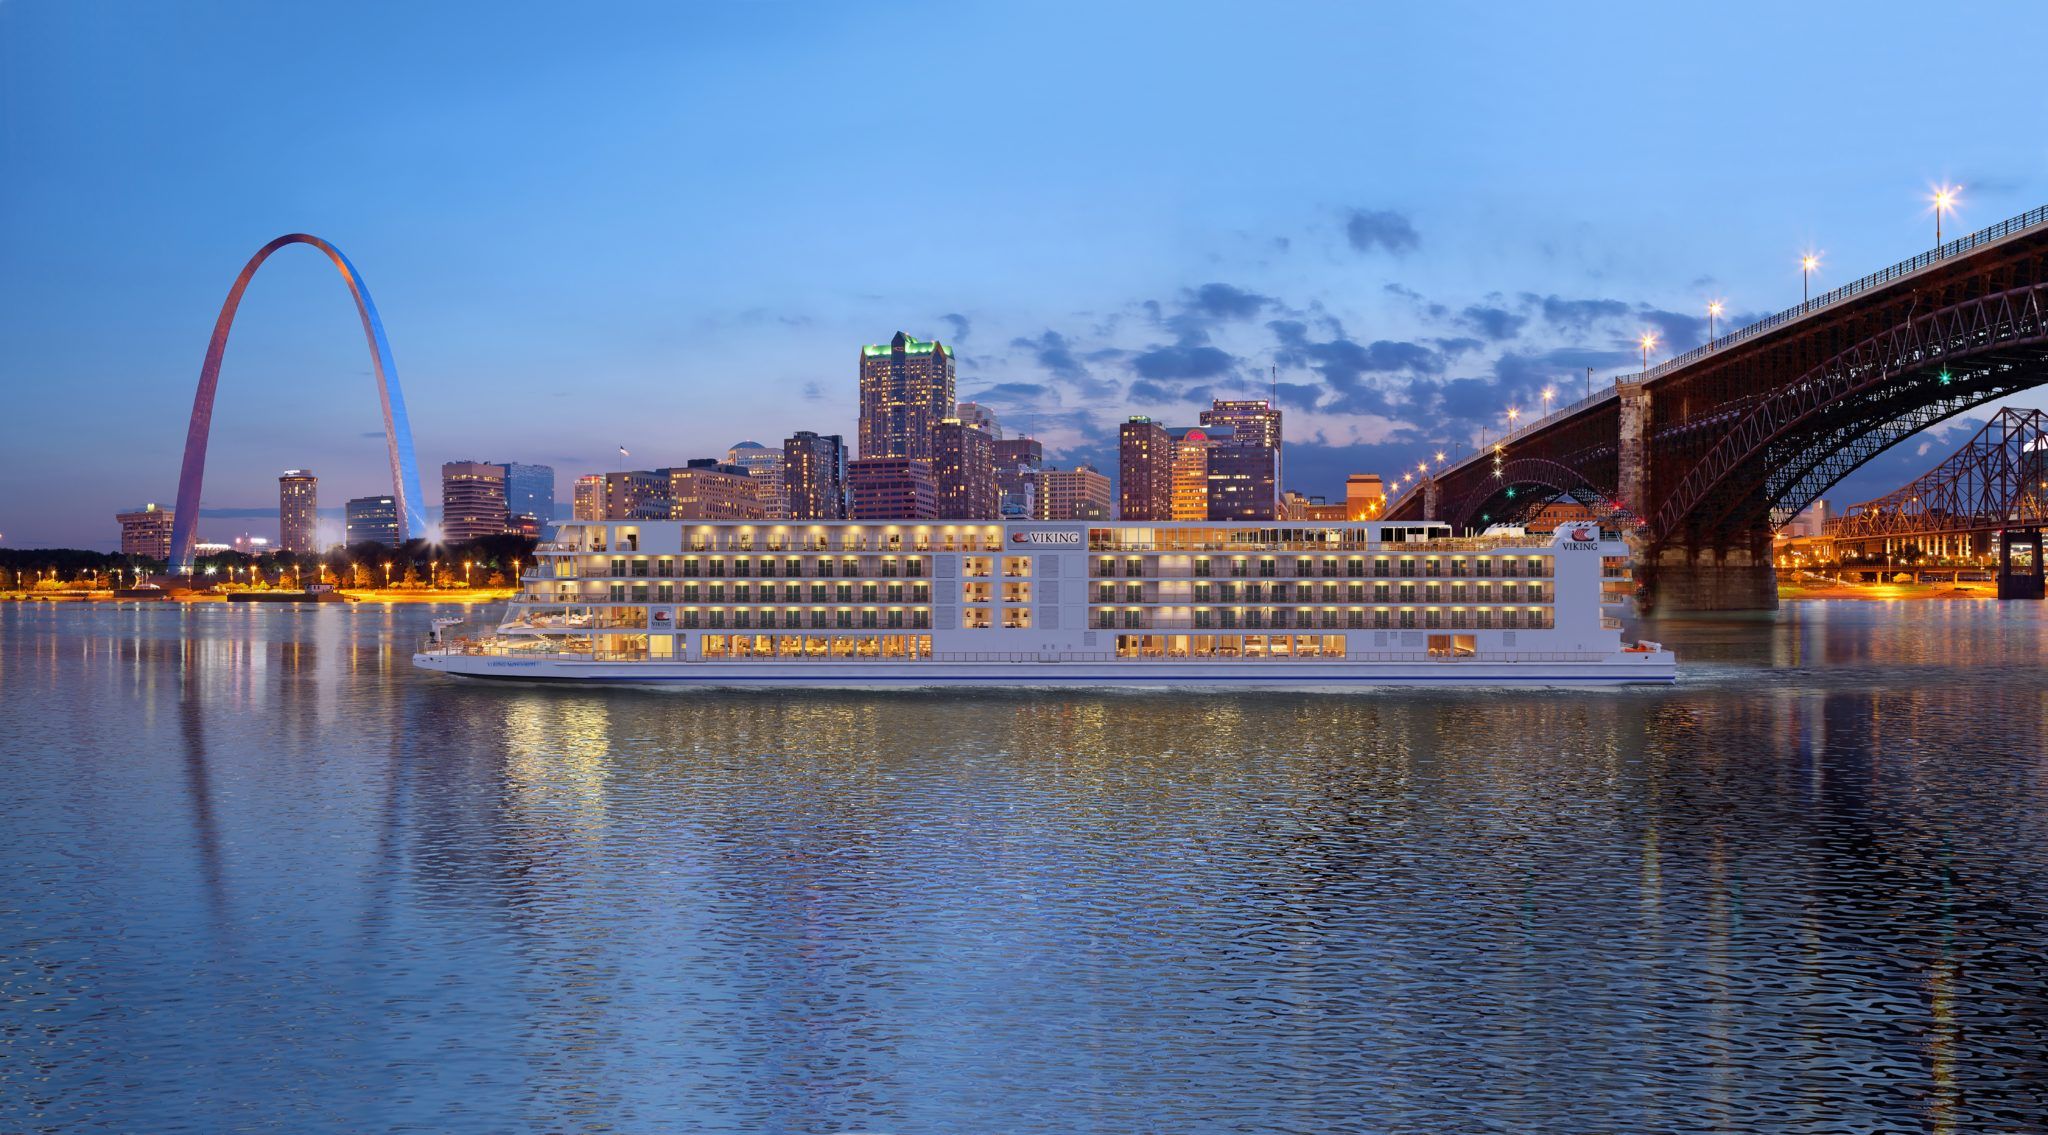 Viking's New Mississippi River Cruises